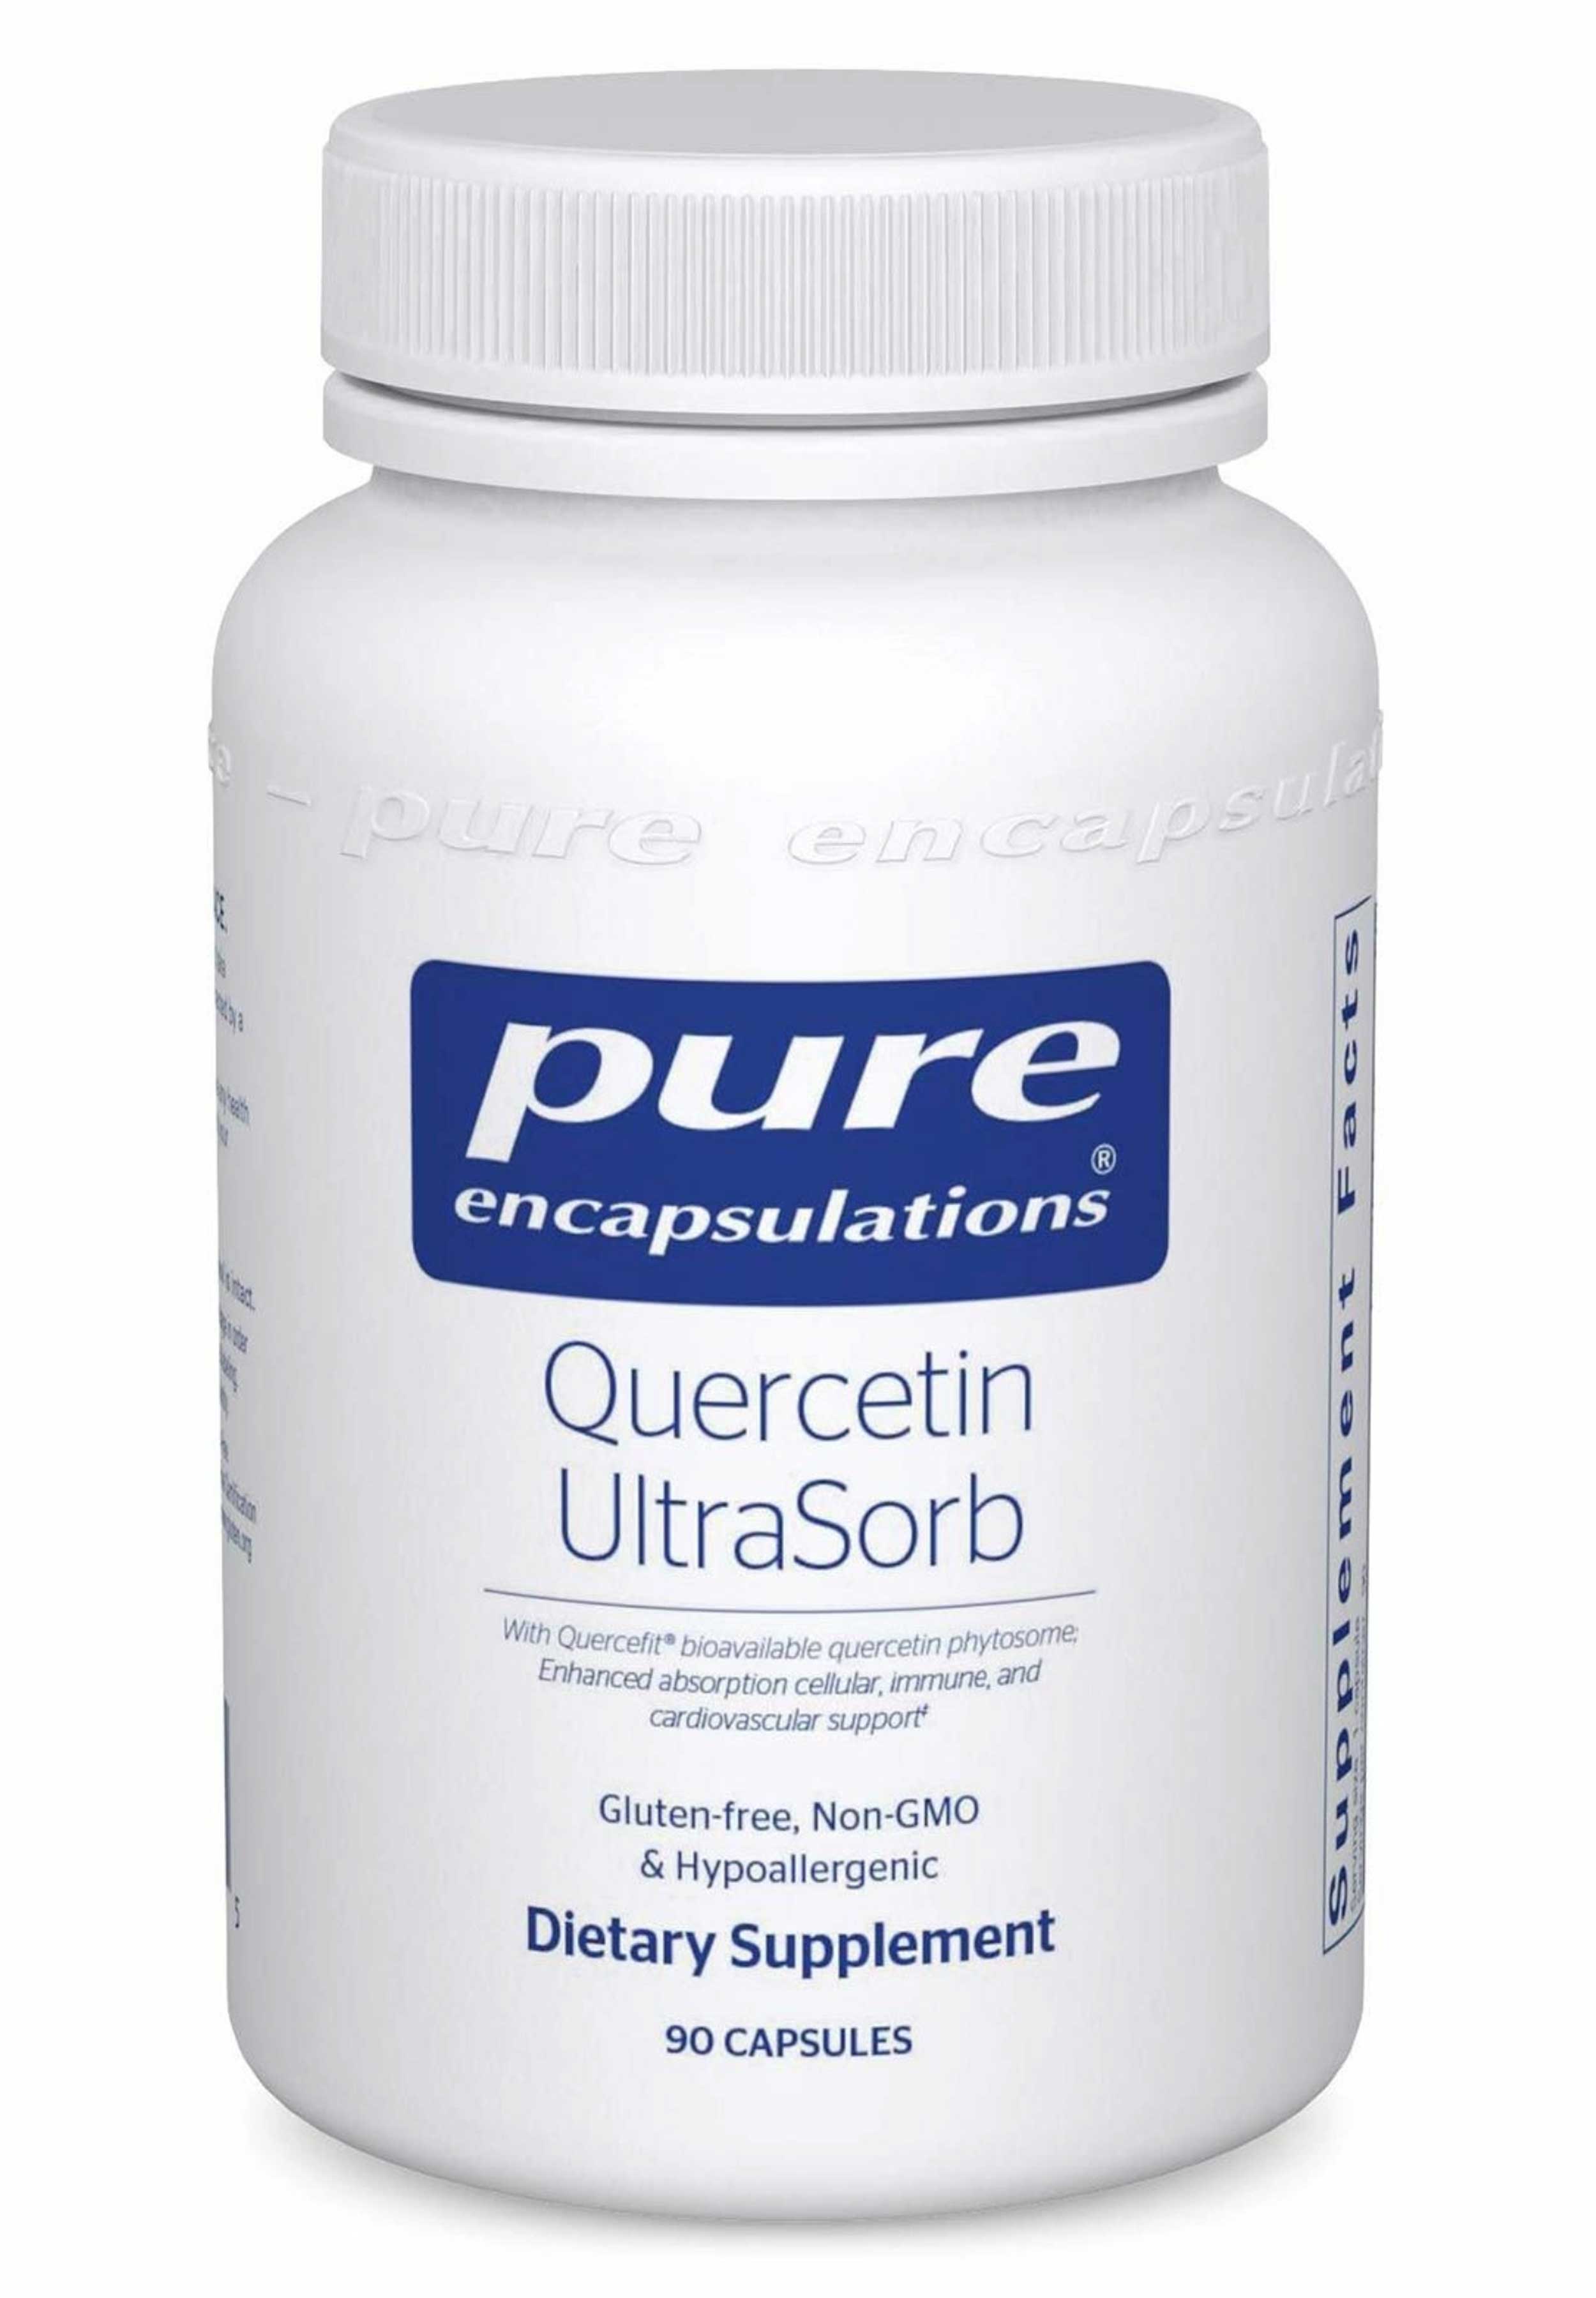 Pure Encapsulations Quercetin UltraSorb